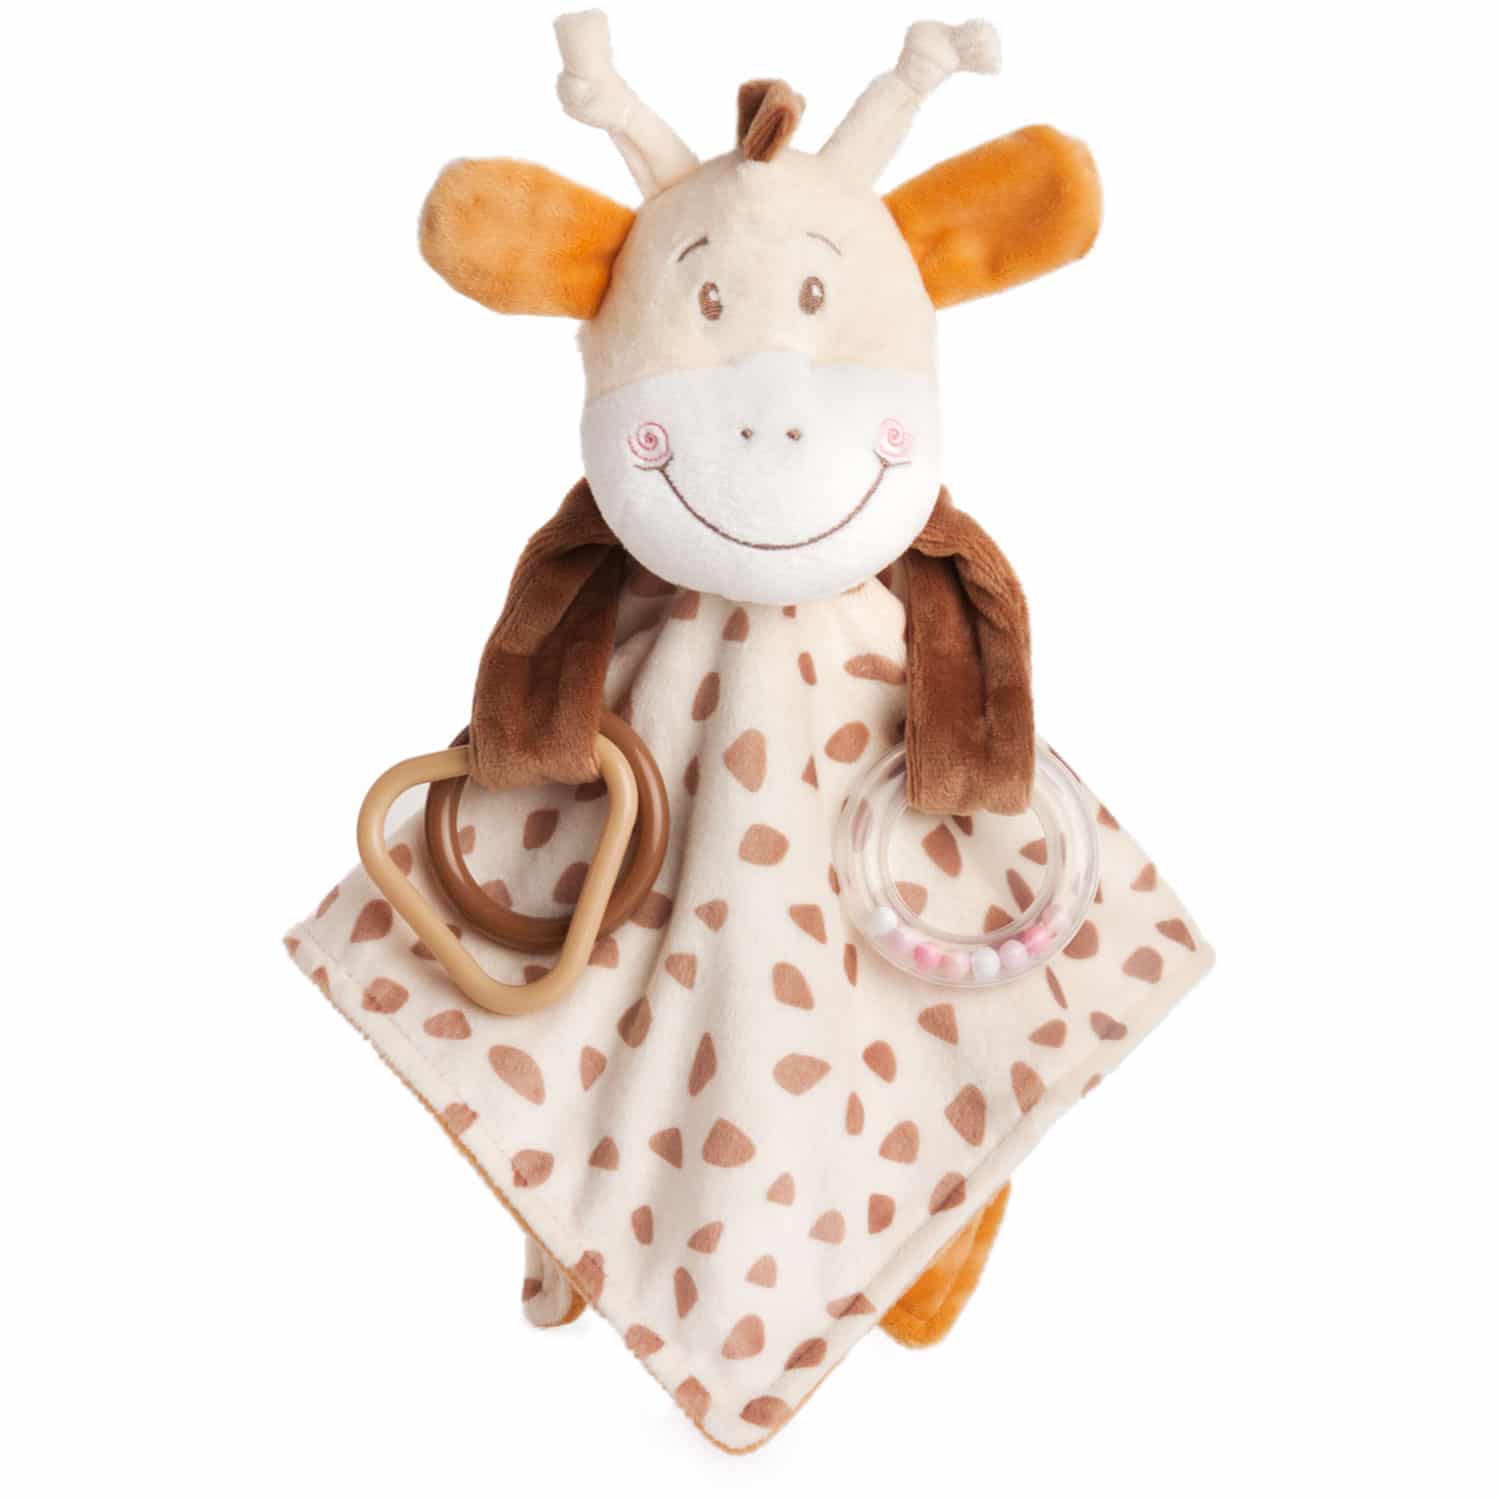 Soft toy for cuddling with giraffe Libbie